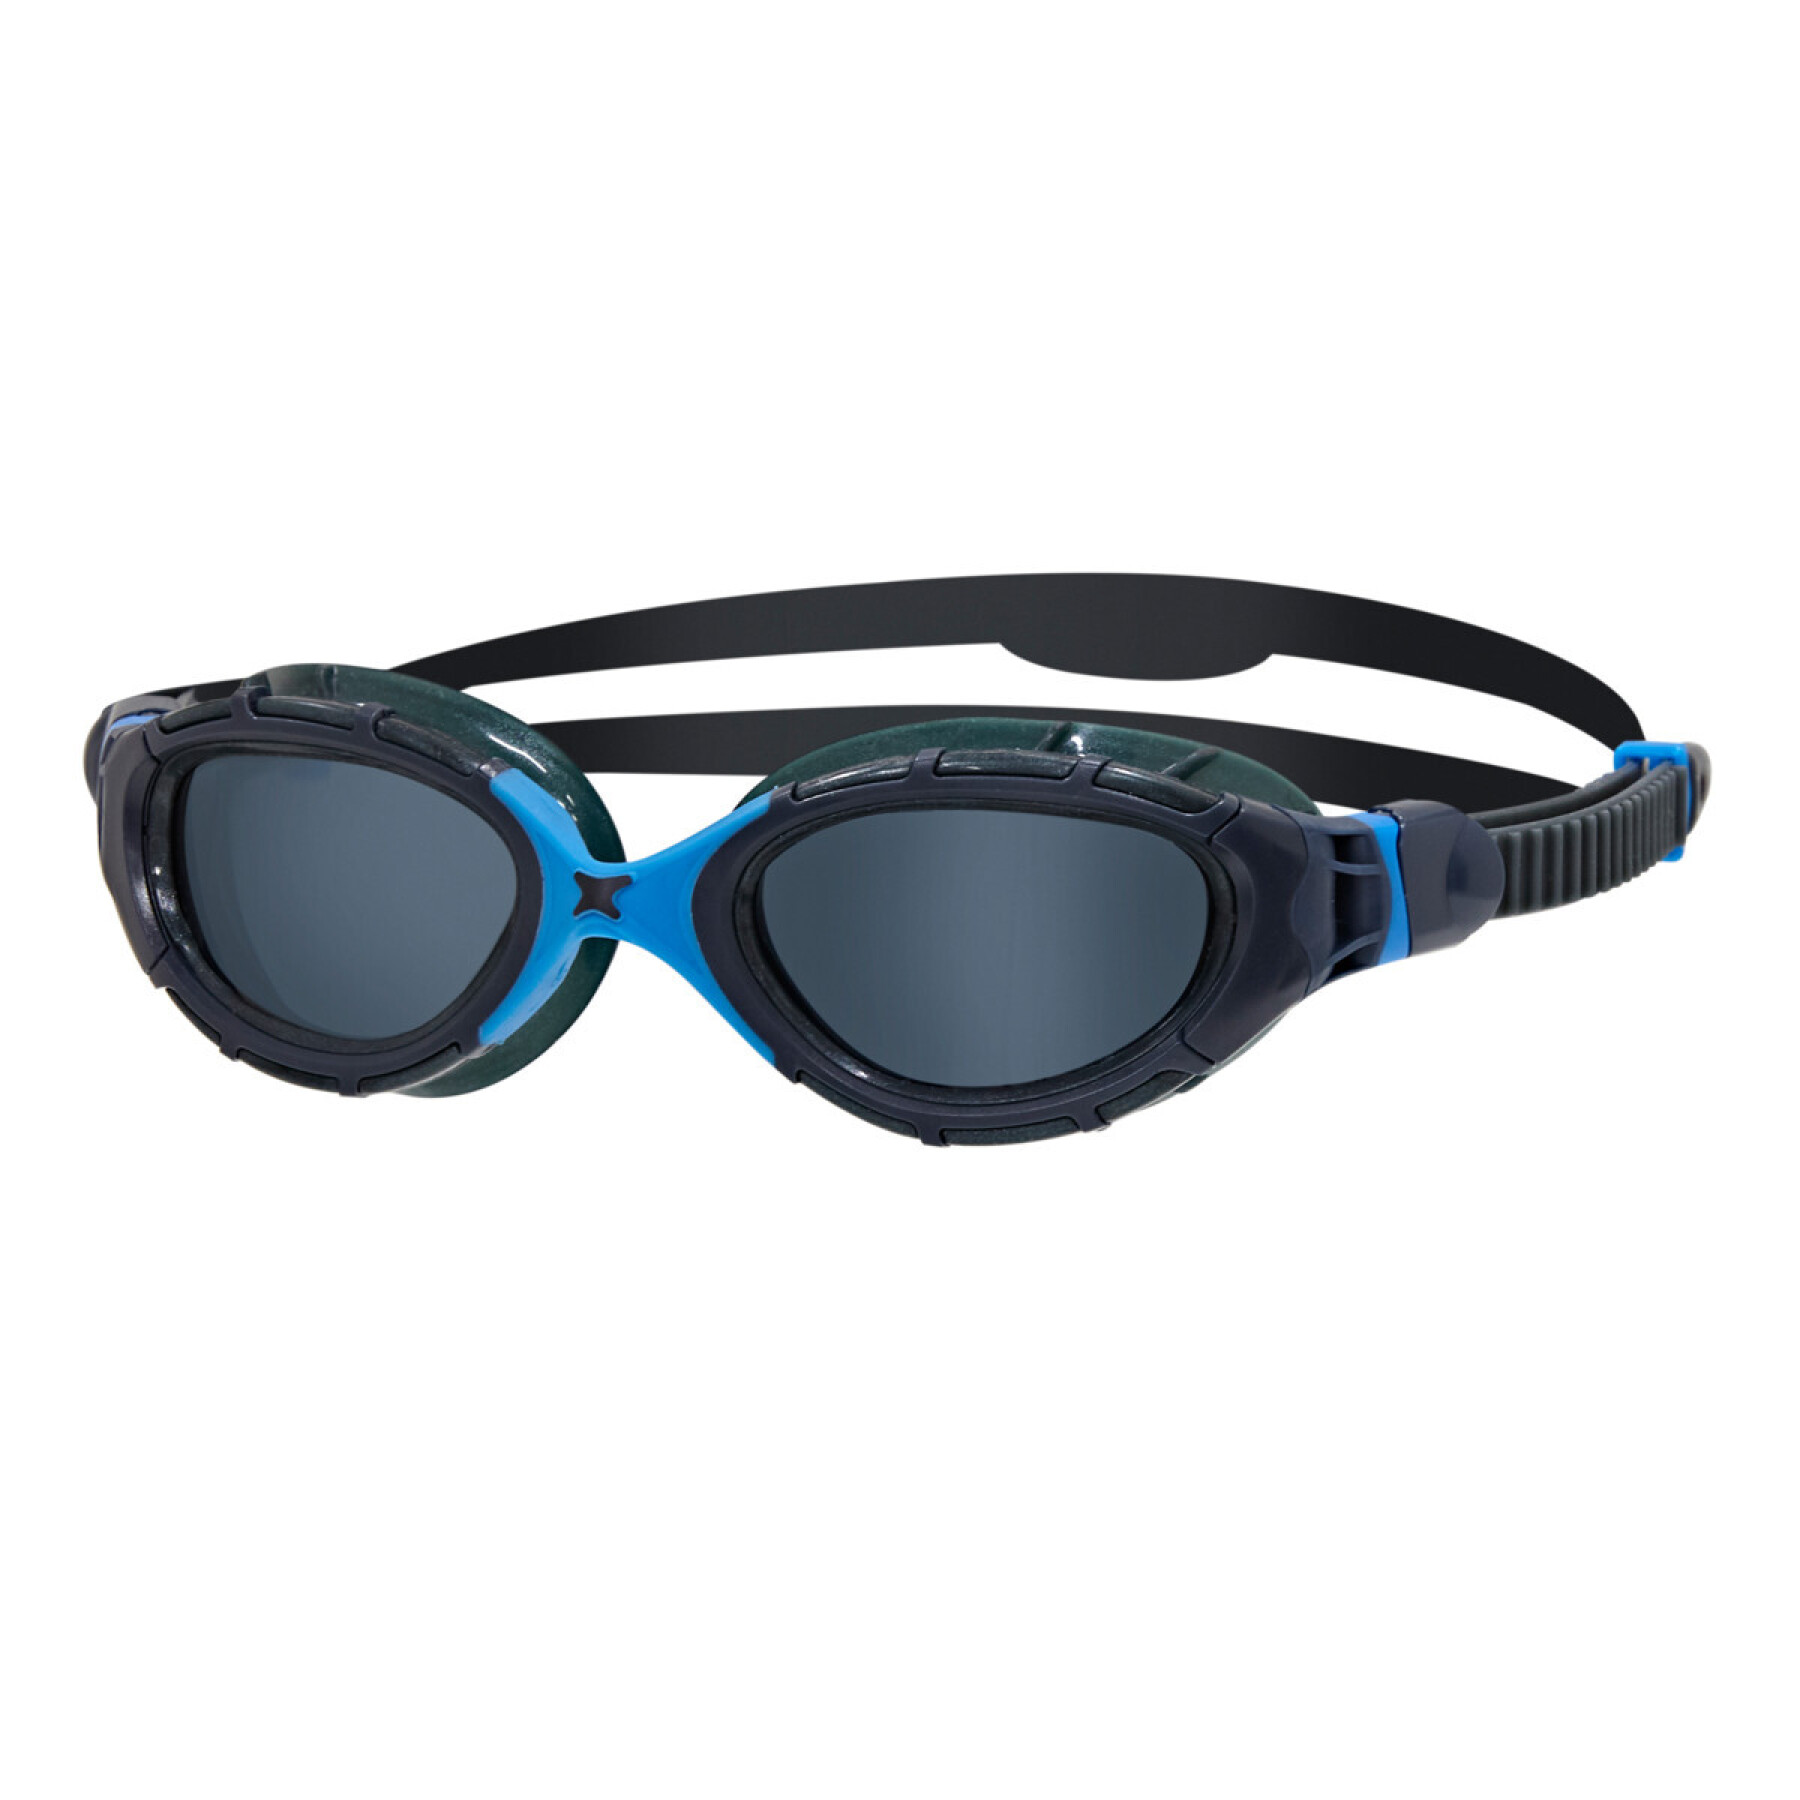 Swimming goggles Zoggs Predator Flex